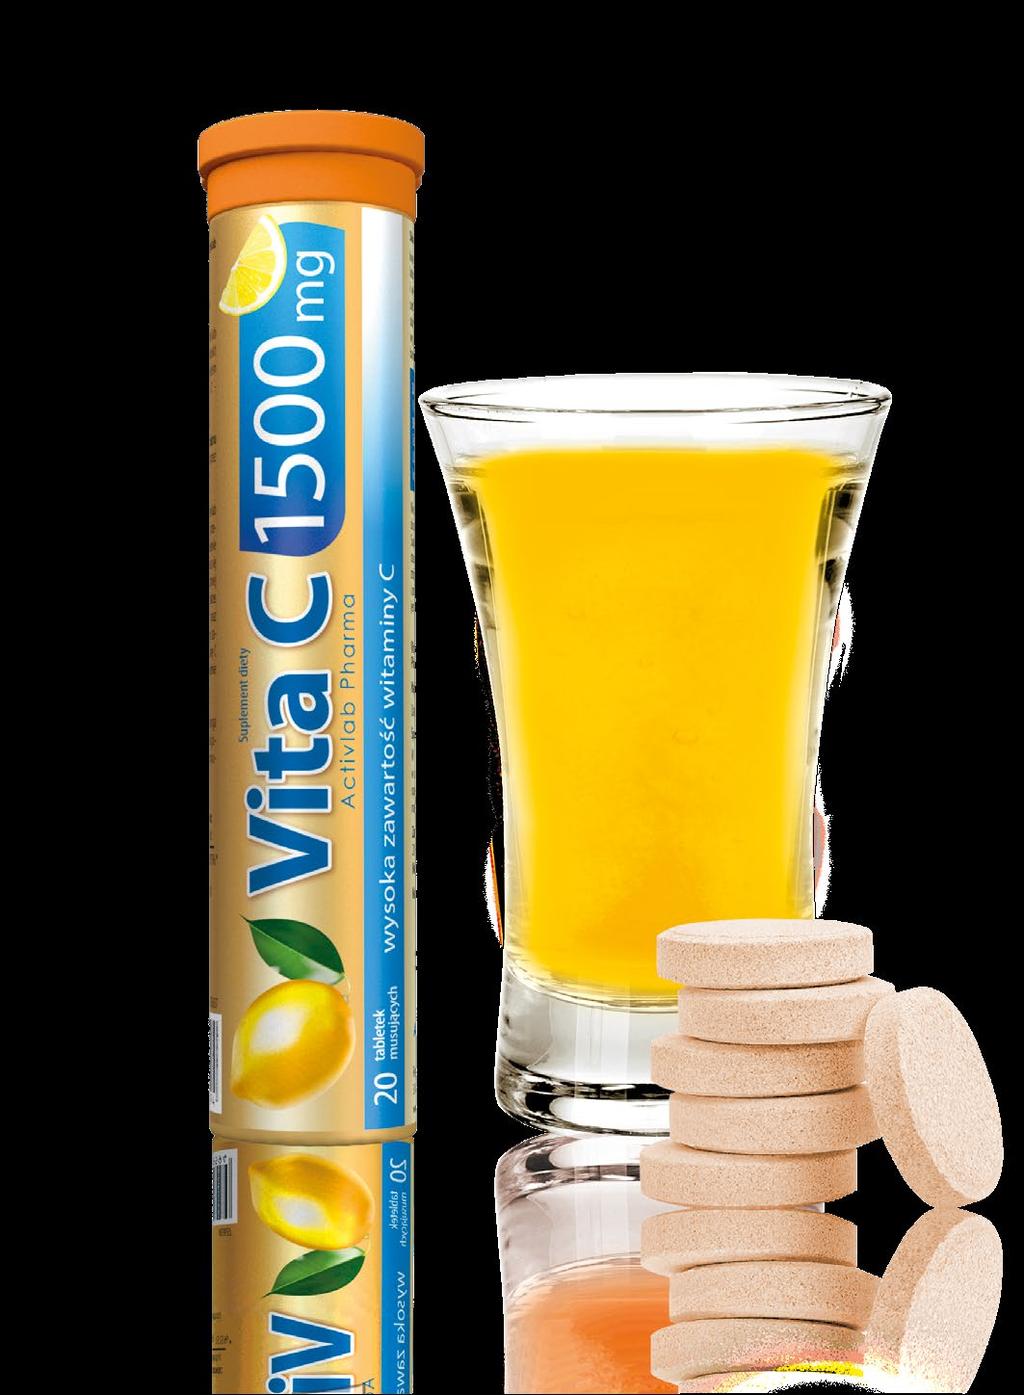 Vita C 1500 mg Produkt o bardzo wysokiej zawartości witaminy C - 1500 mg!!! Nie zawiera cukru - polecany dla diabetyków.